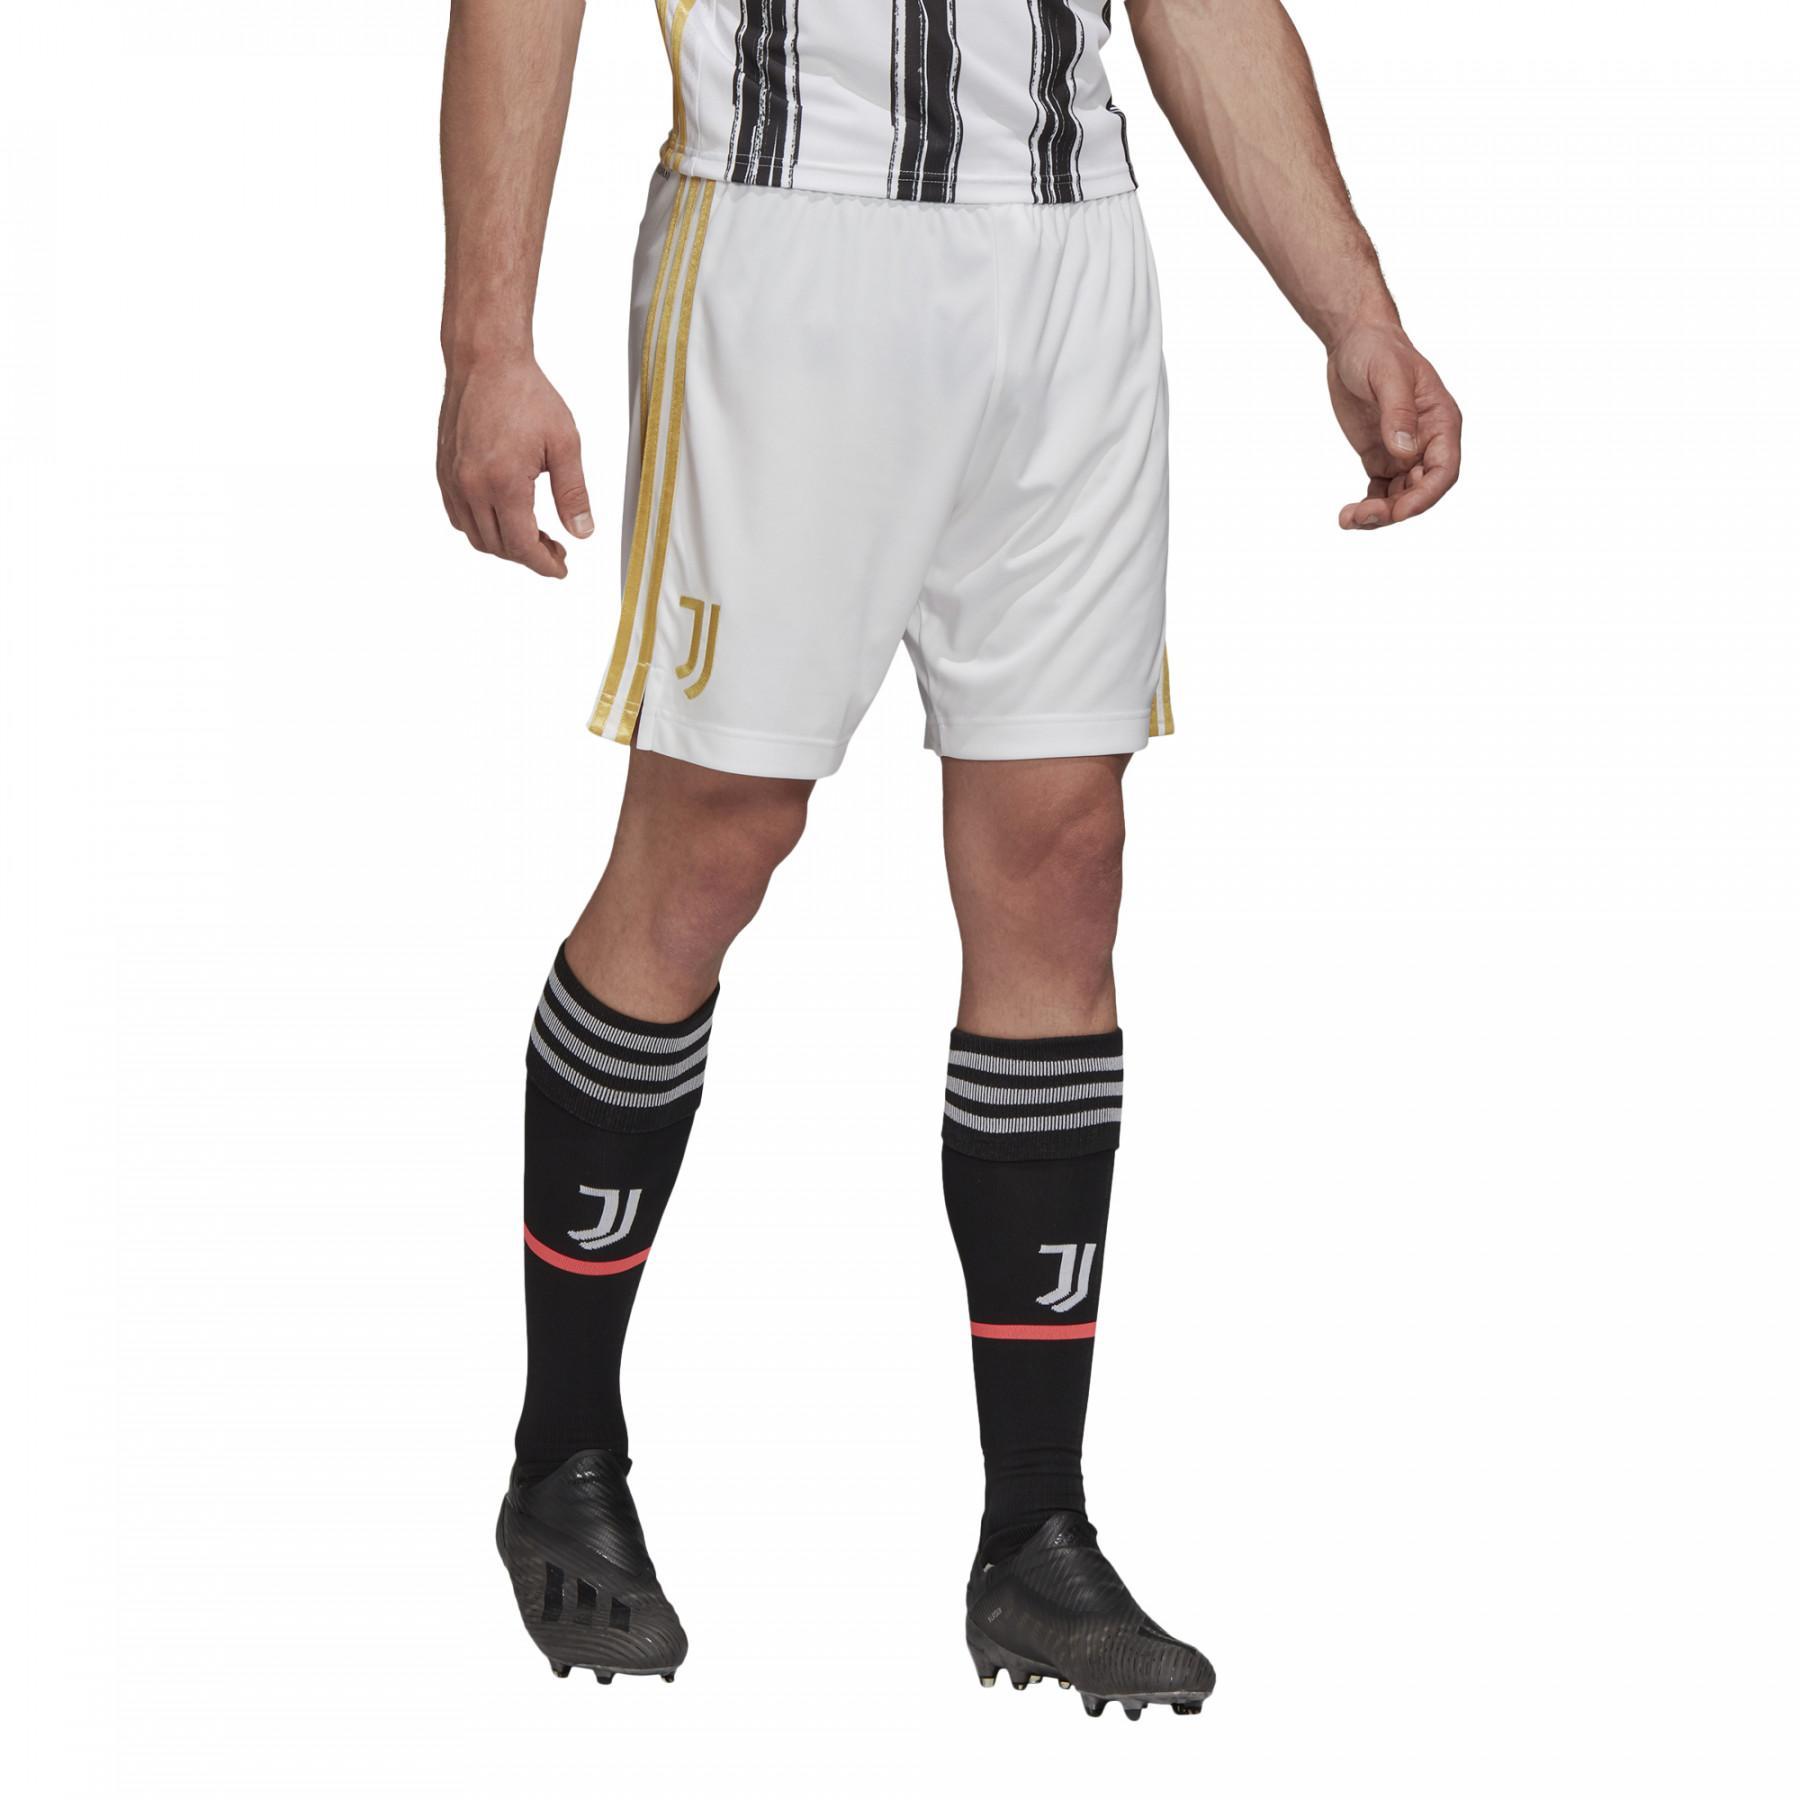 Home shorts Juventus 2020/21